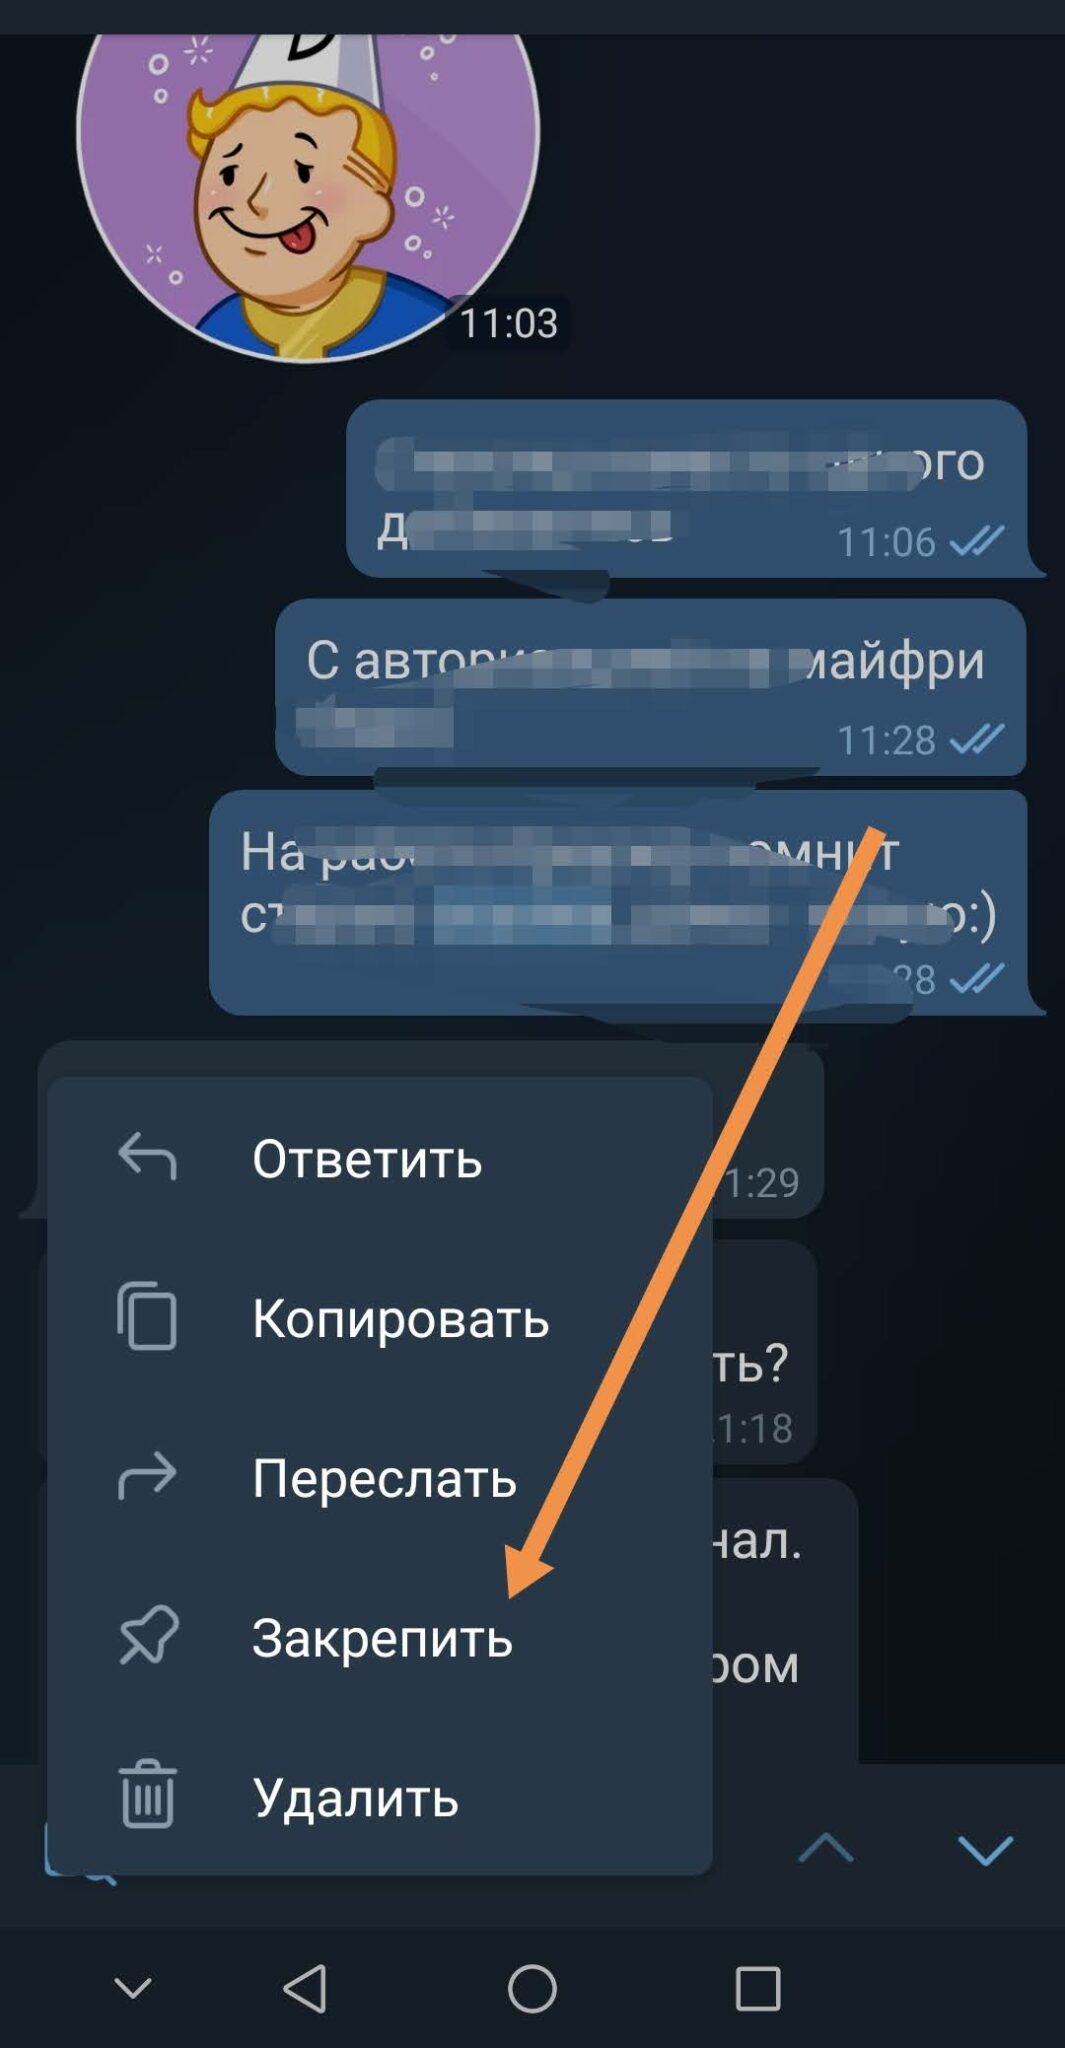 Код россии для мобильного телеграмм телефона бесплатно без регистрации фото 96